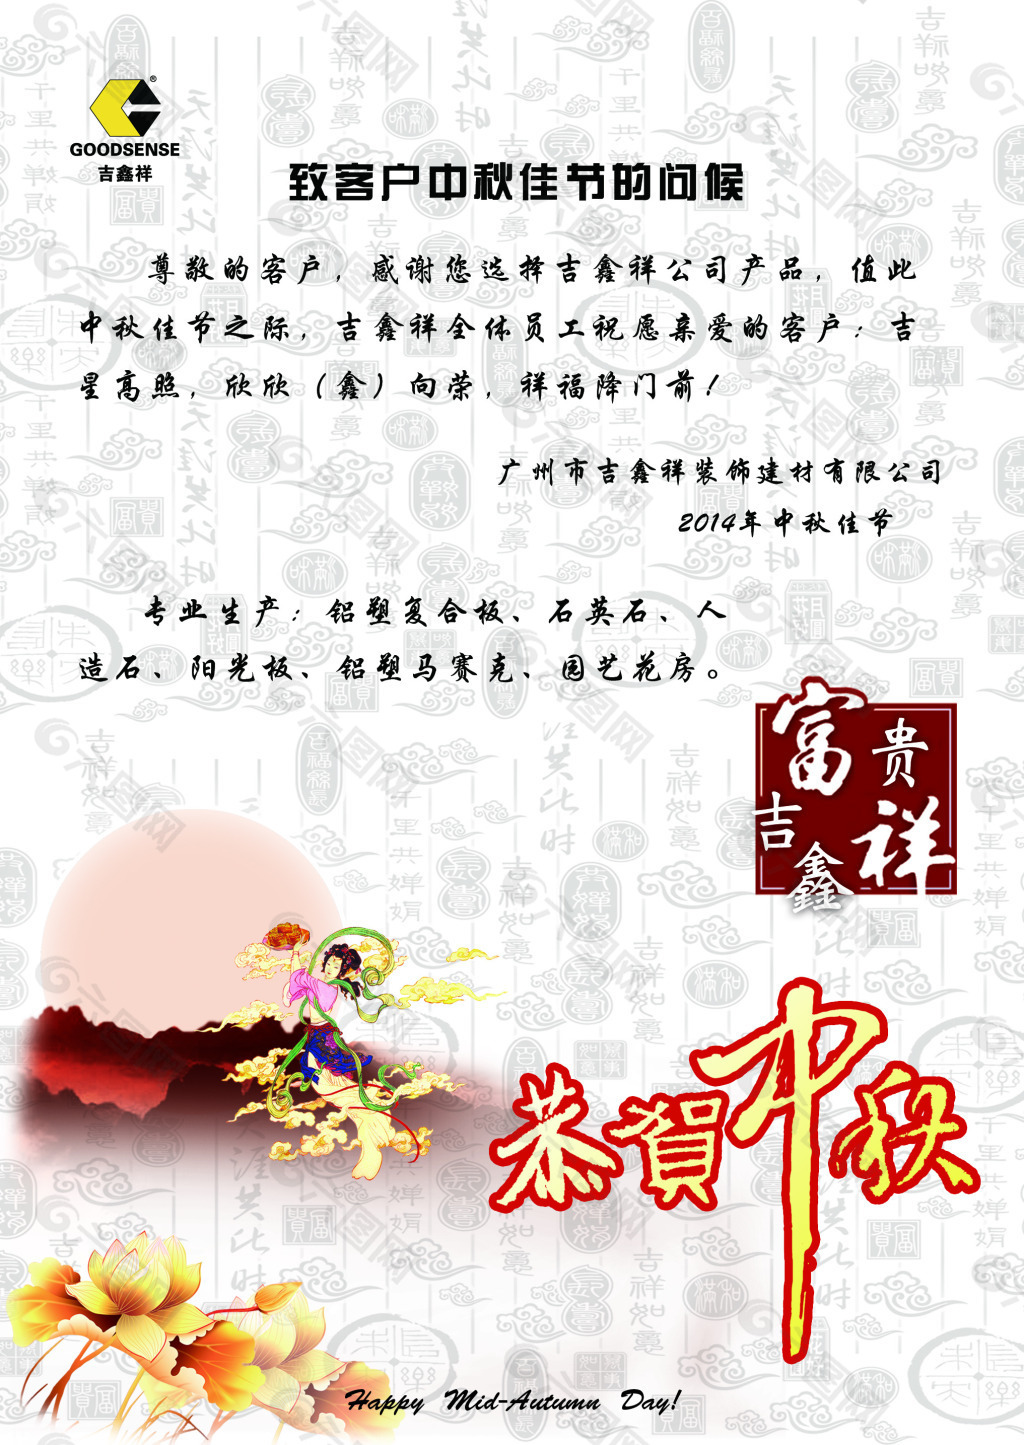 中秋节贺卡上的贺语图片